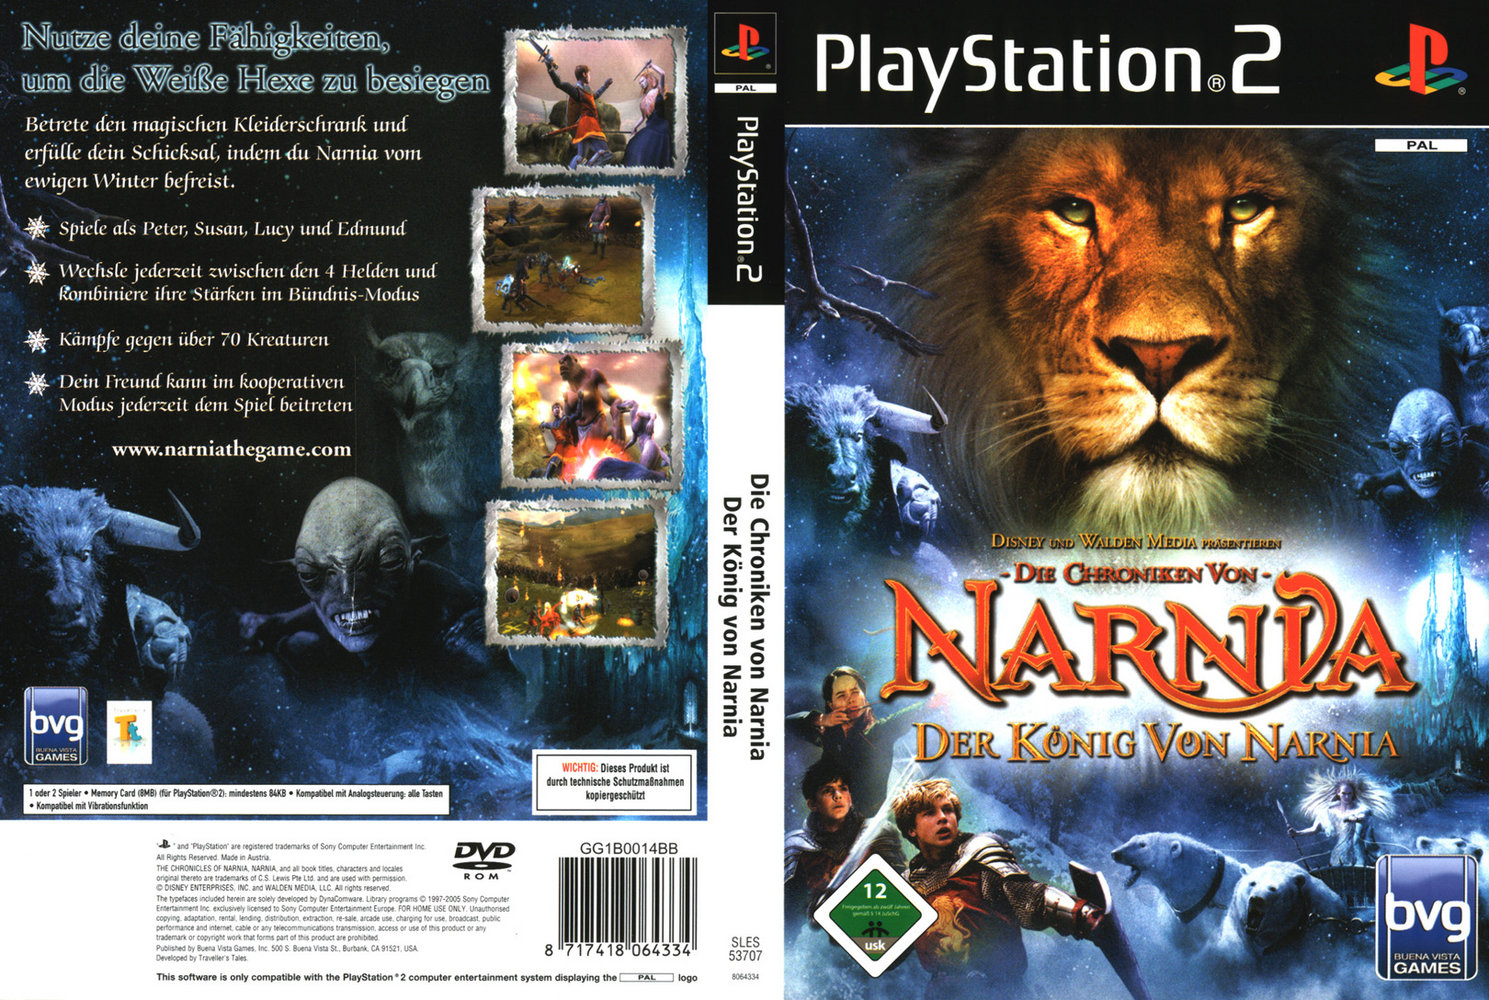 Die Chroniken von Narnia - Der König von Narnia PSX cover